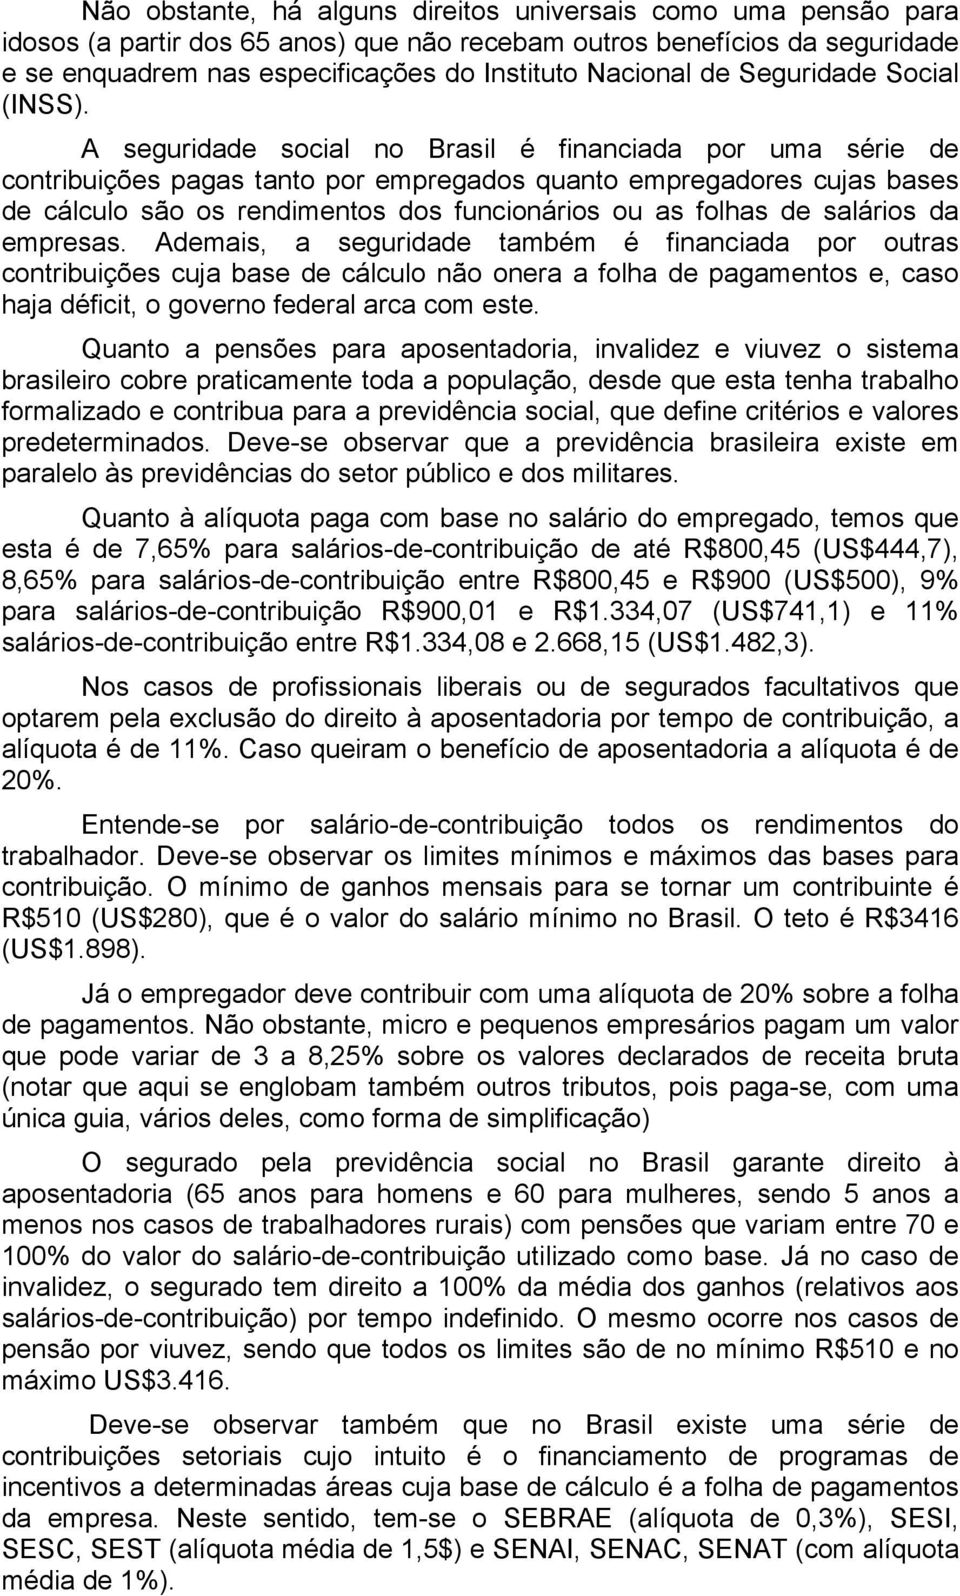 A seguridade social no Brasil é financiada por uma série de contribuições pagas tanto por empregados quanto empregadores cujas bases de cálculo são os rendimentos dos funcionários ou as folhas de